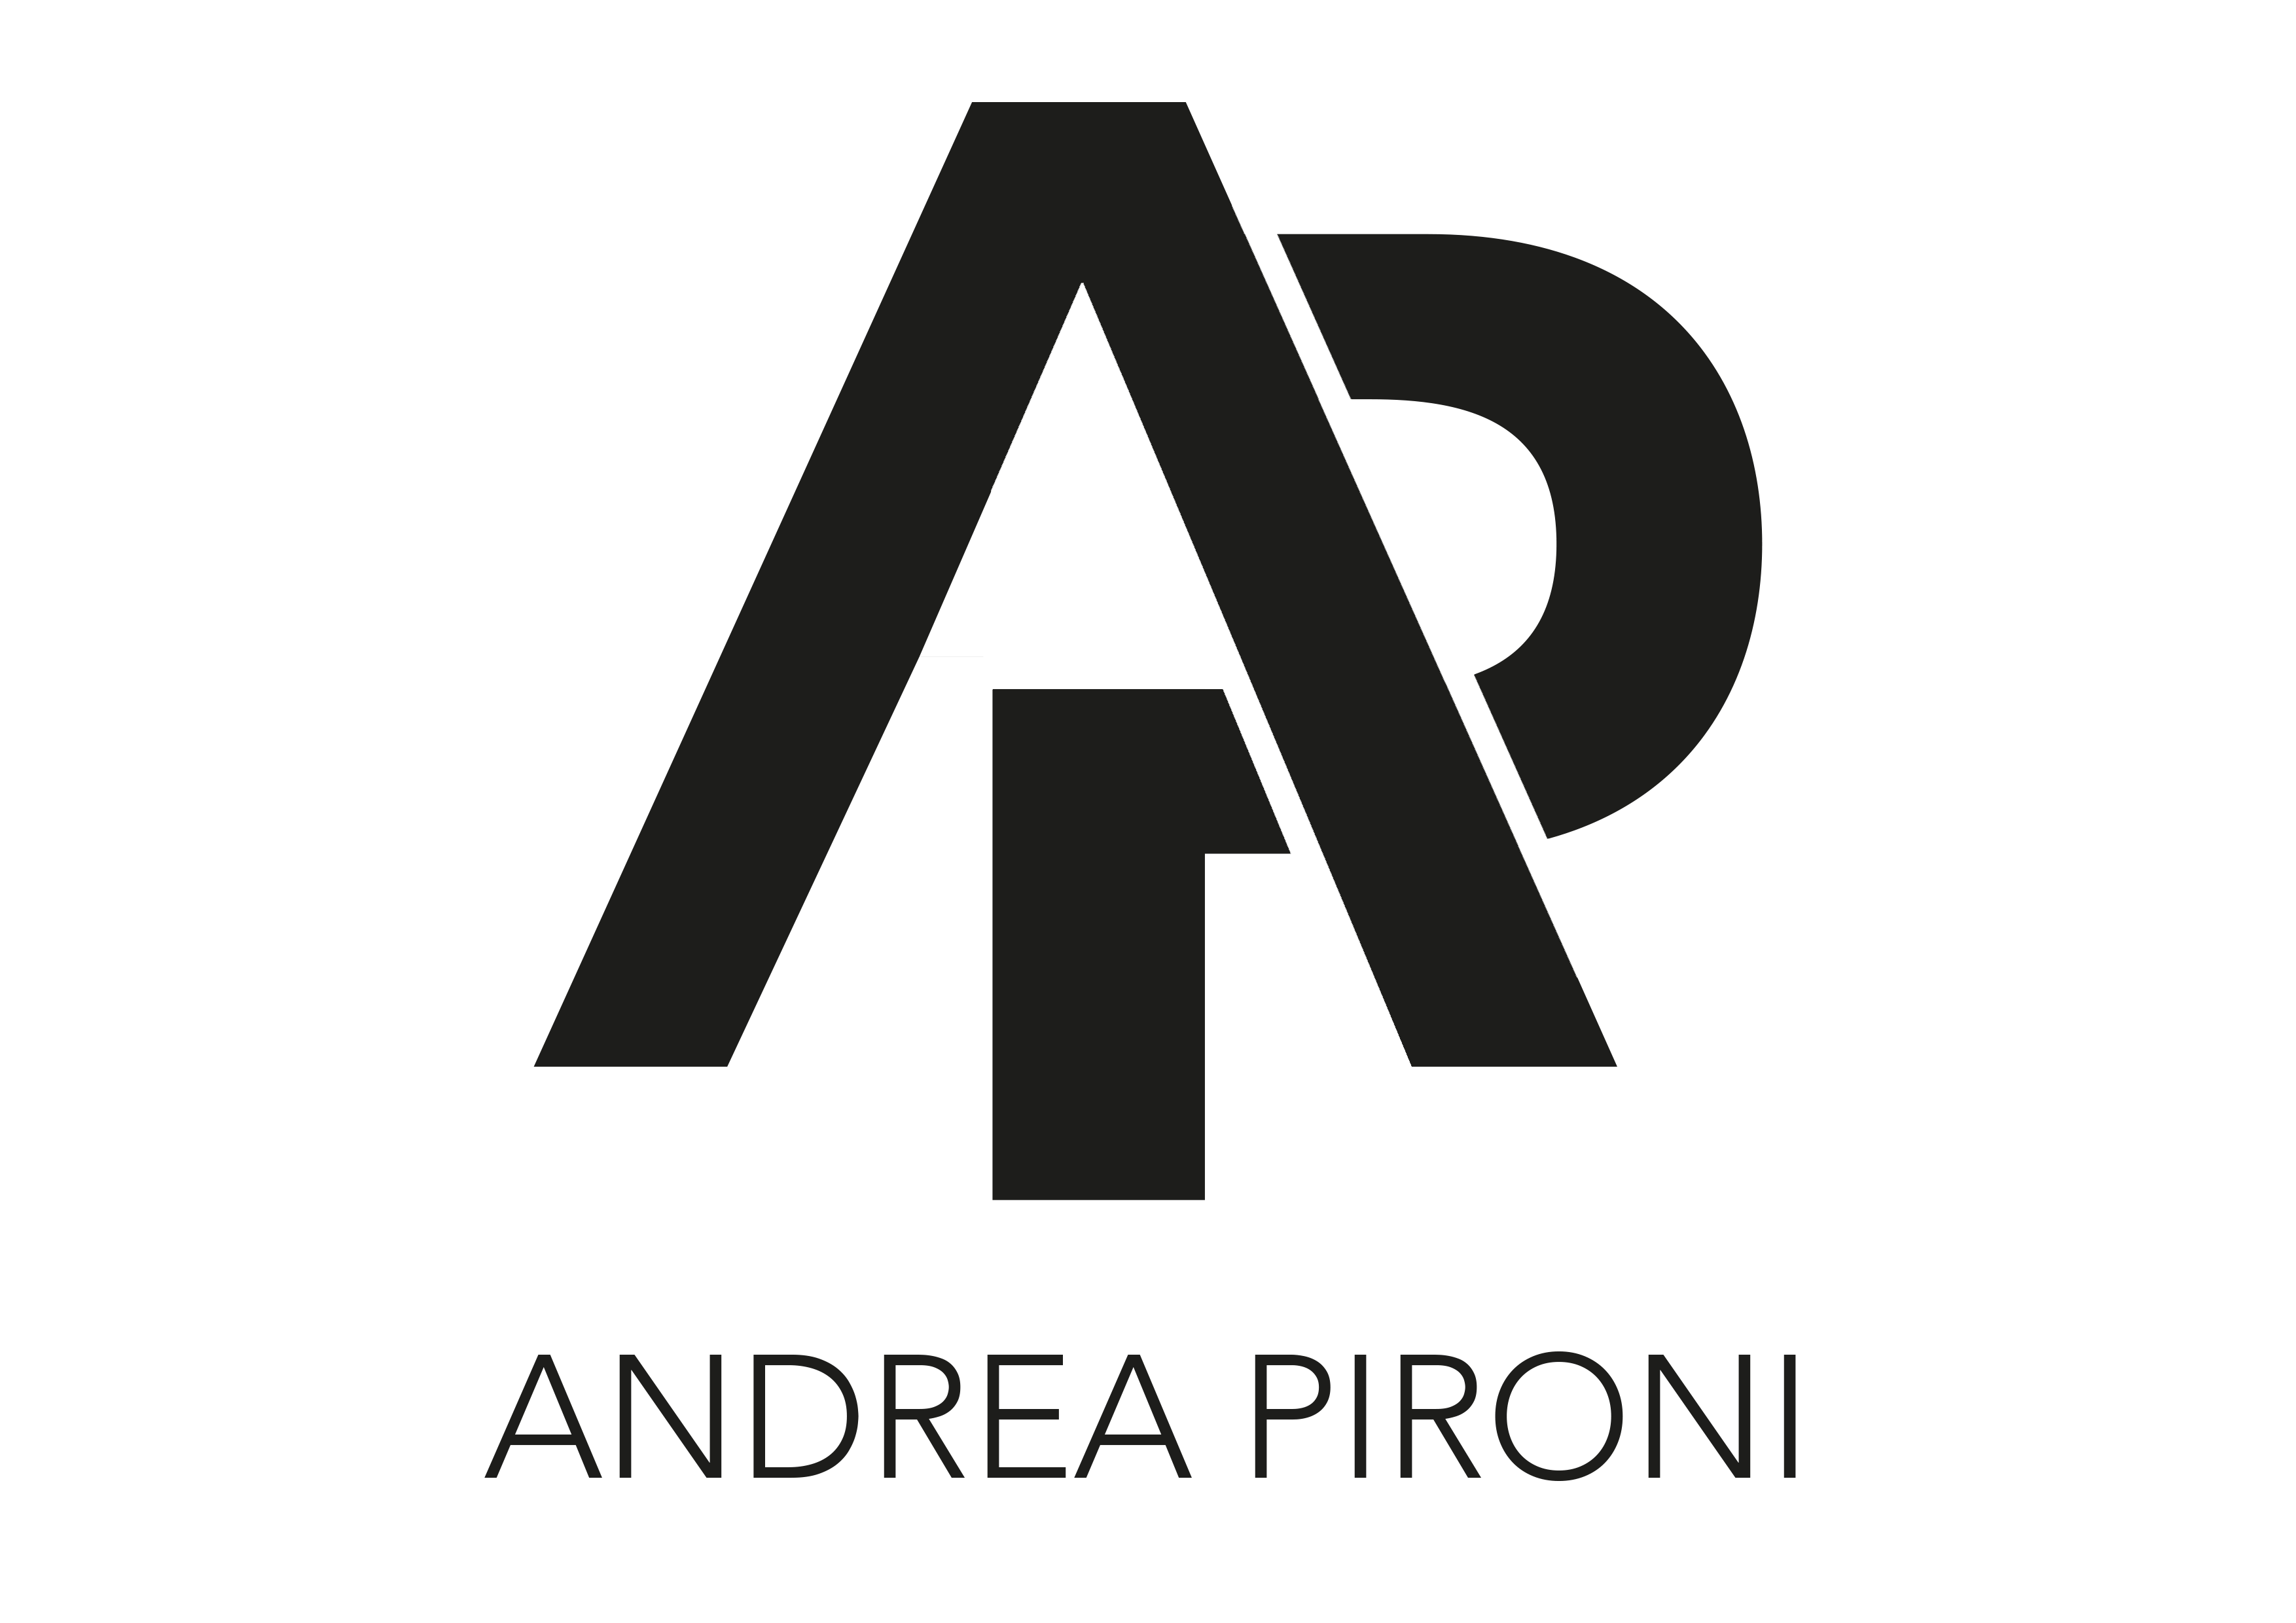 Andrea Pironi